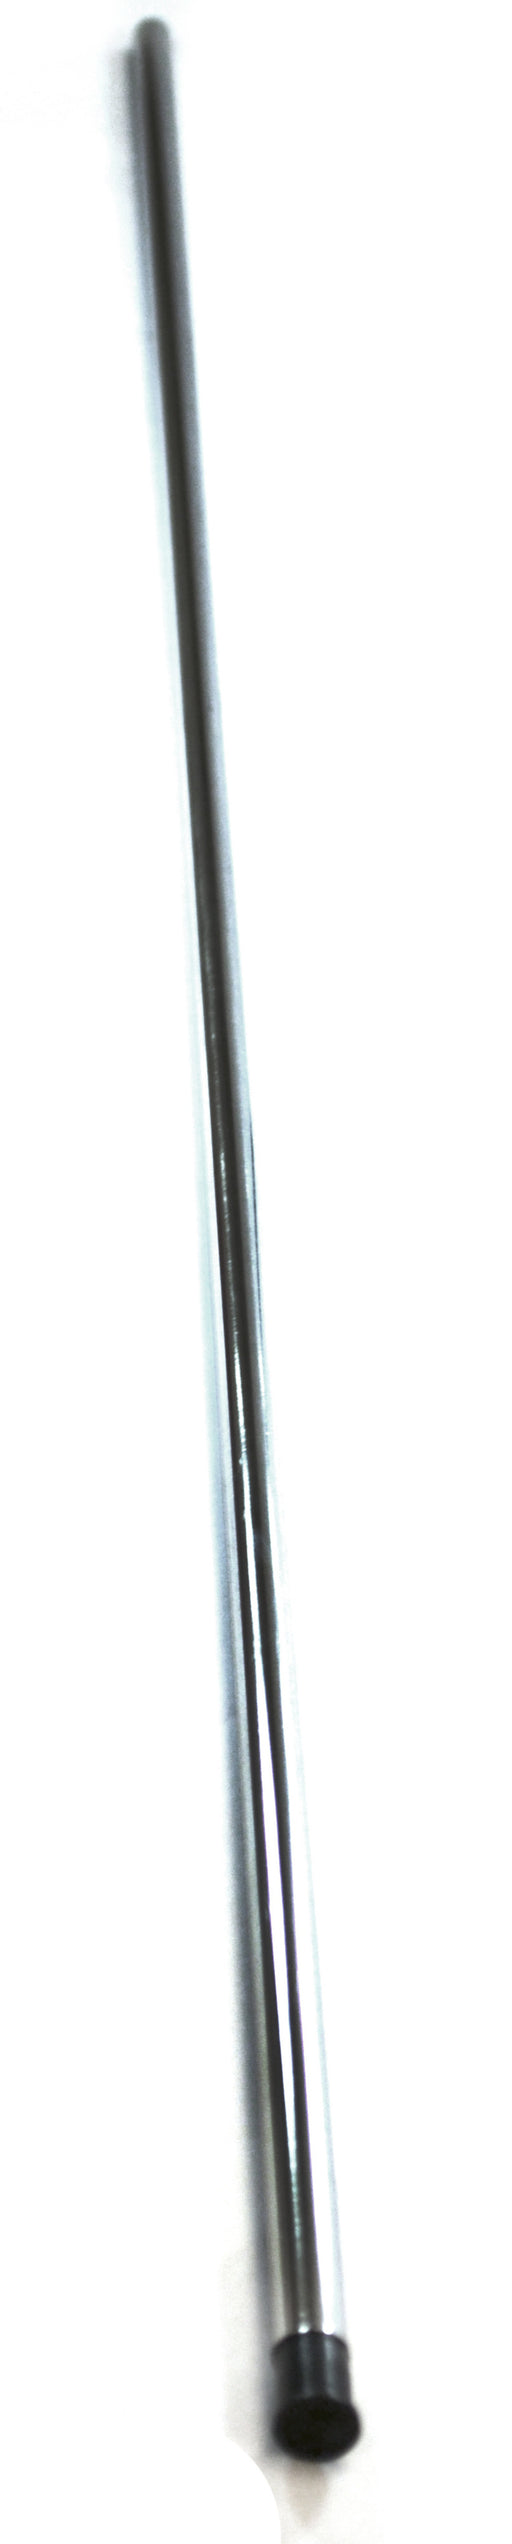 Retort Stand Rod, 35.5" (90cm) - Stainless Steel - 10 x 1.5mm Thread - Eisco Labs